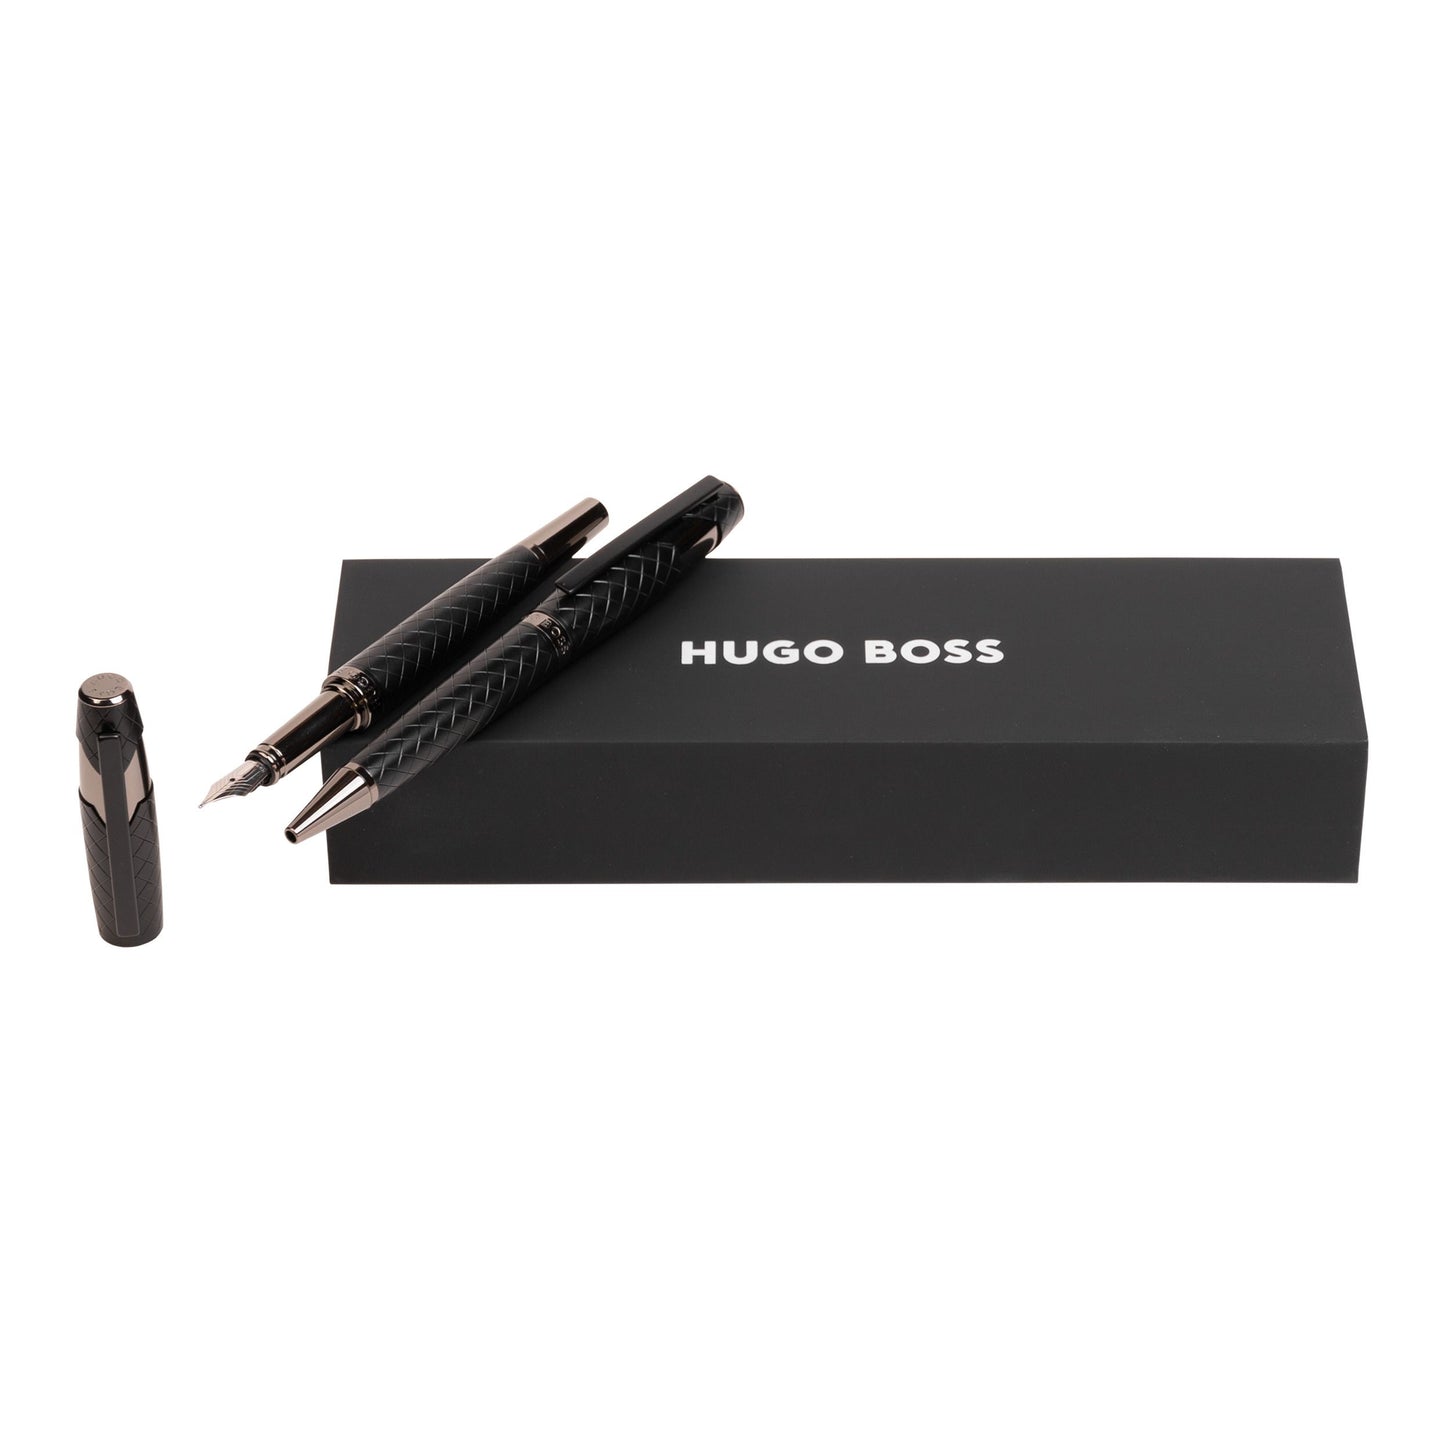 Hugo Boss Schreibset CHEVRON Black | Kugelschreiber und Füllfederhalter